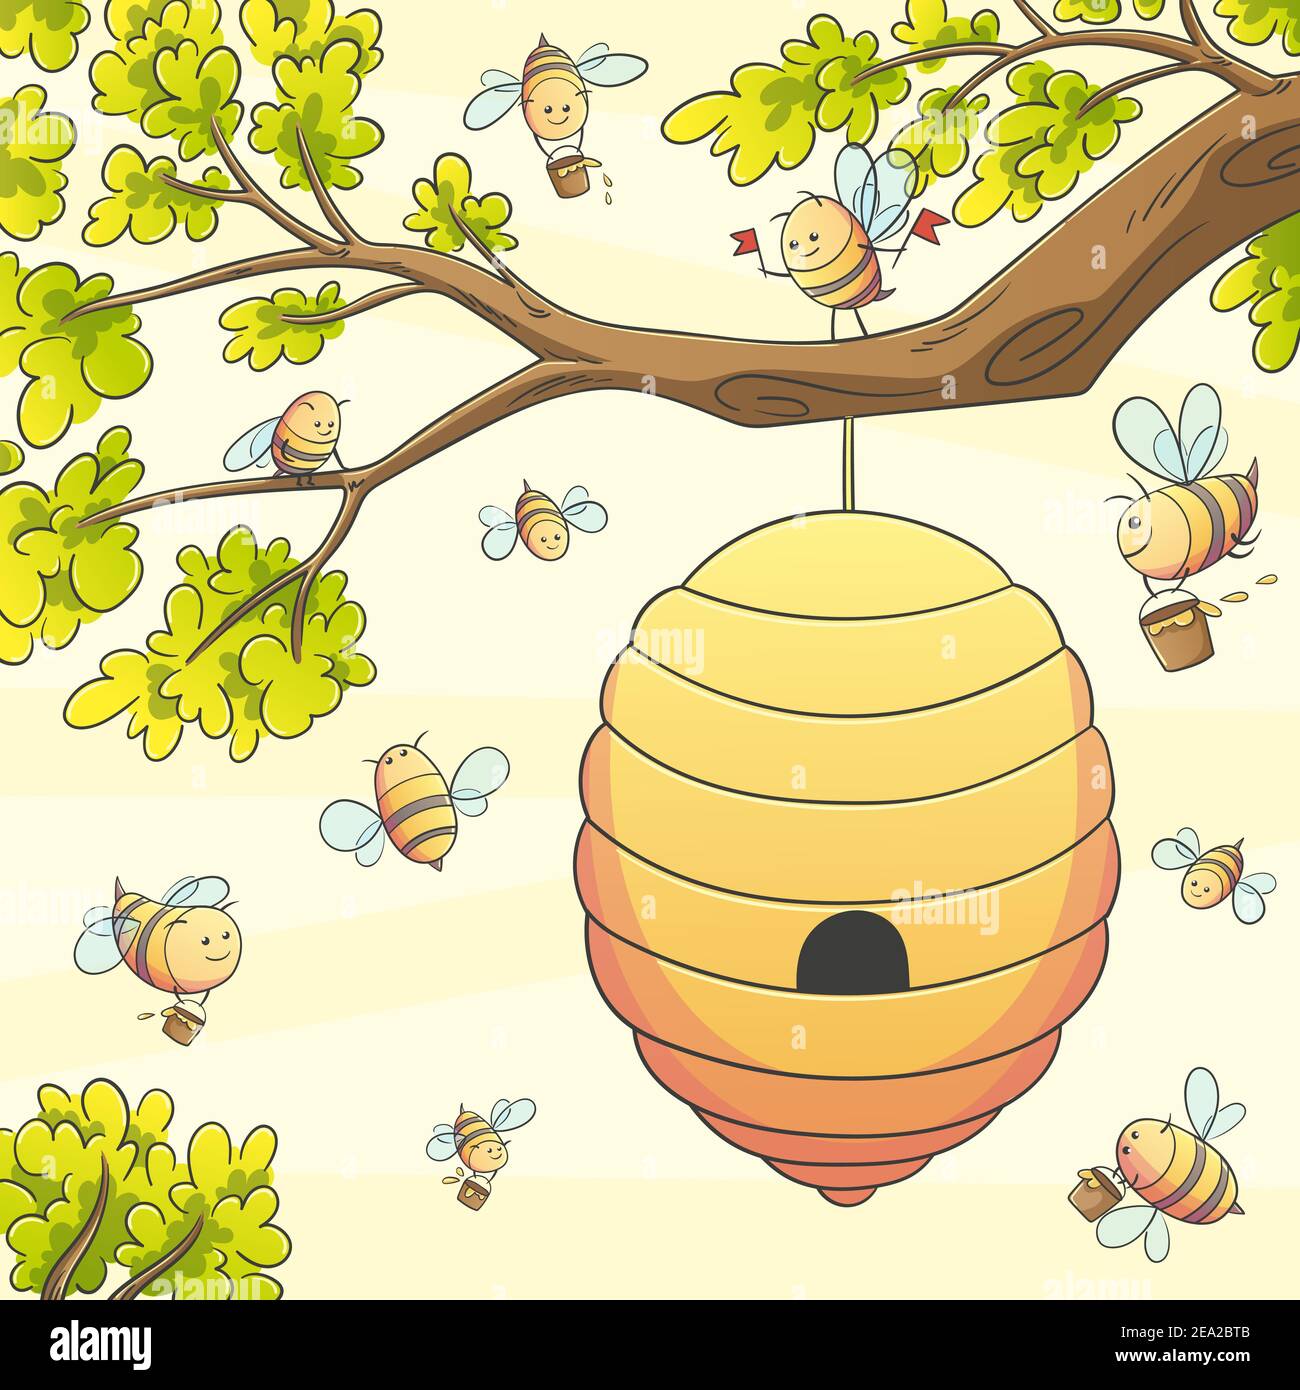 Bienen am Bienenstock. Handgezeichnete Vektorgrafik mit separaten Ebenen. Stock Vektor